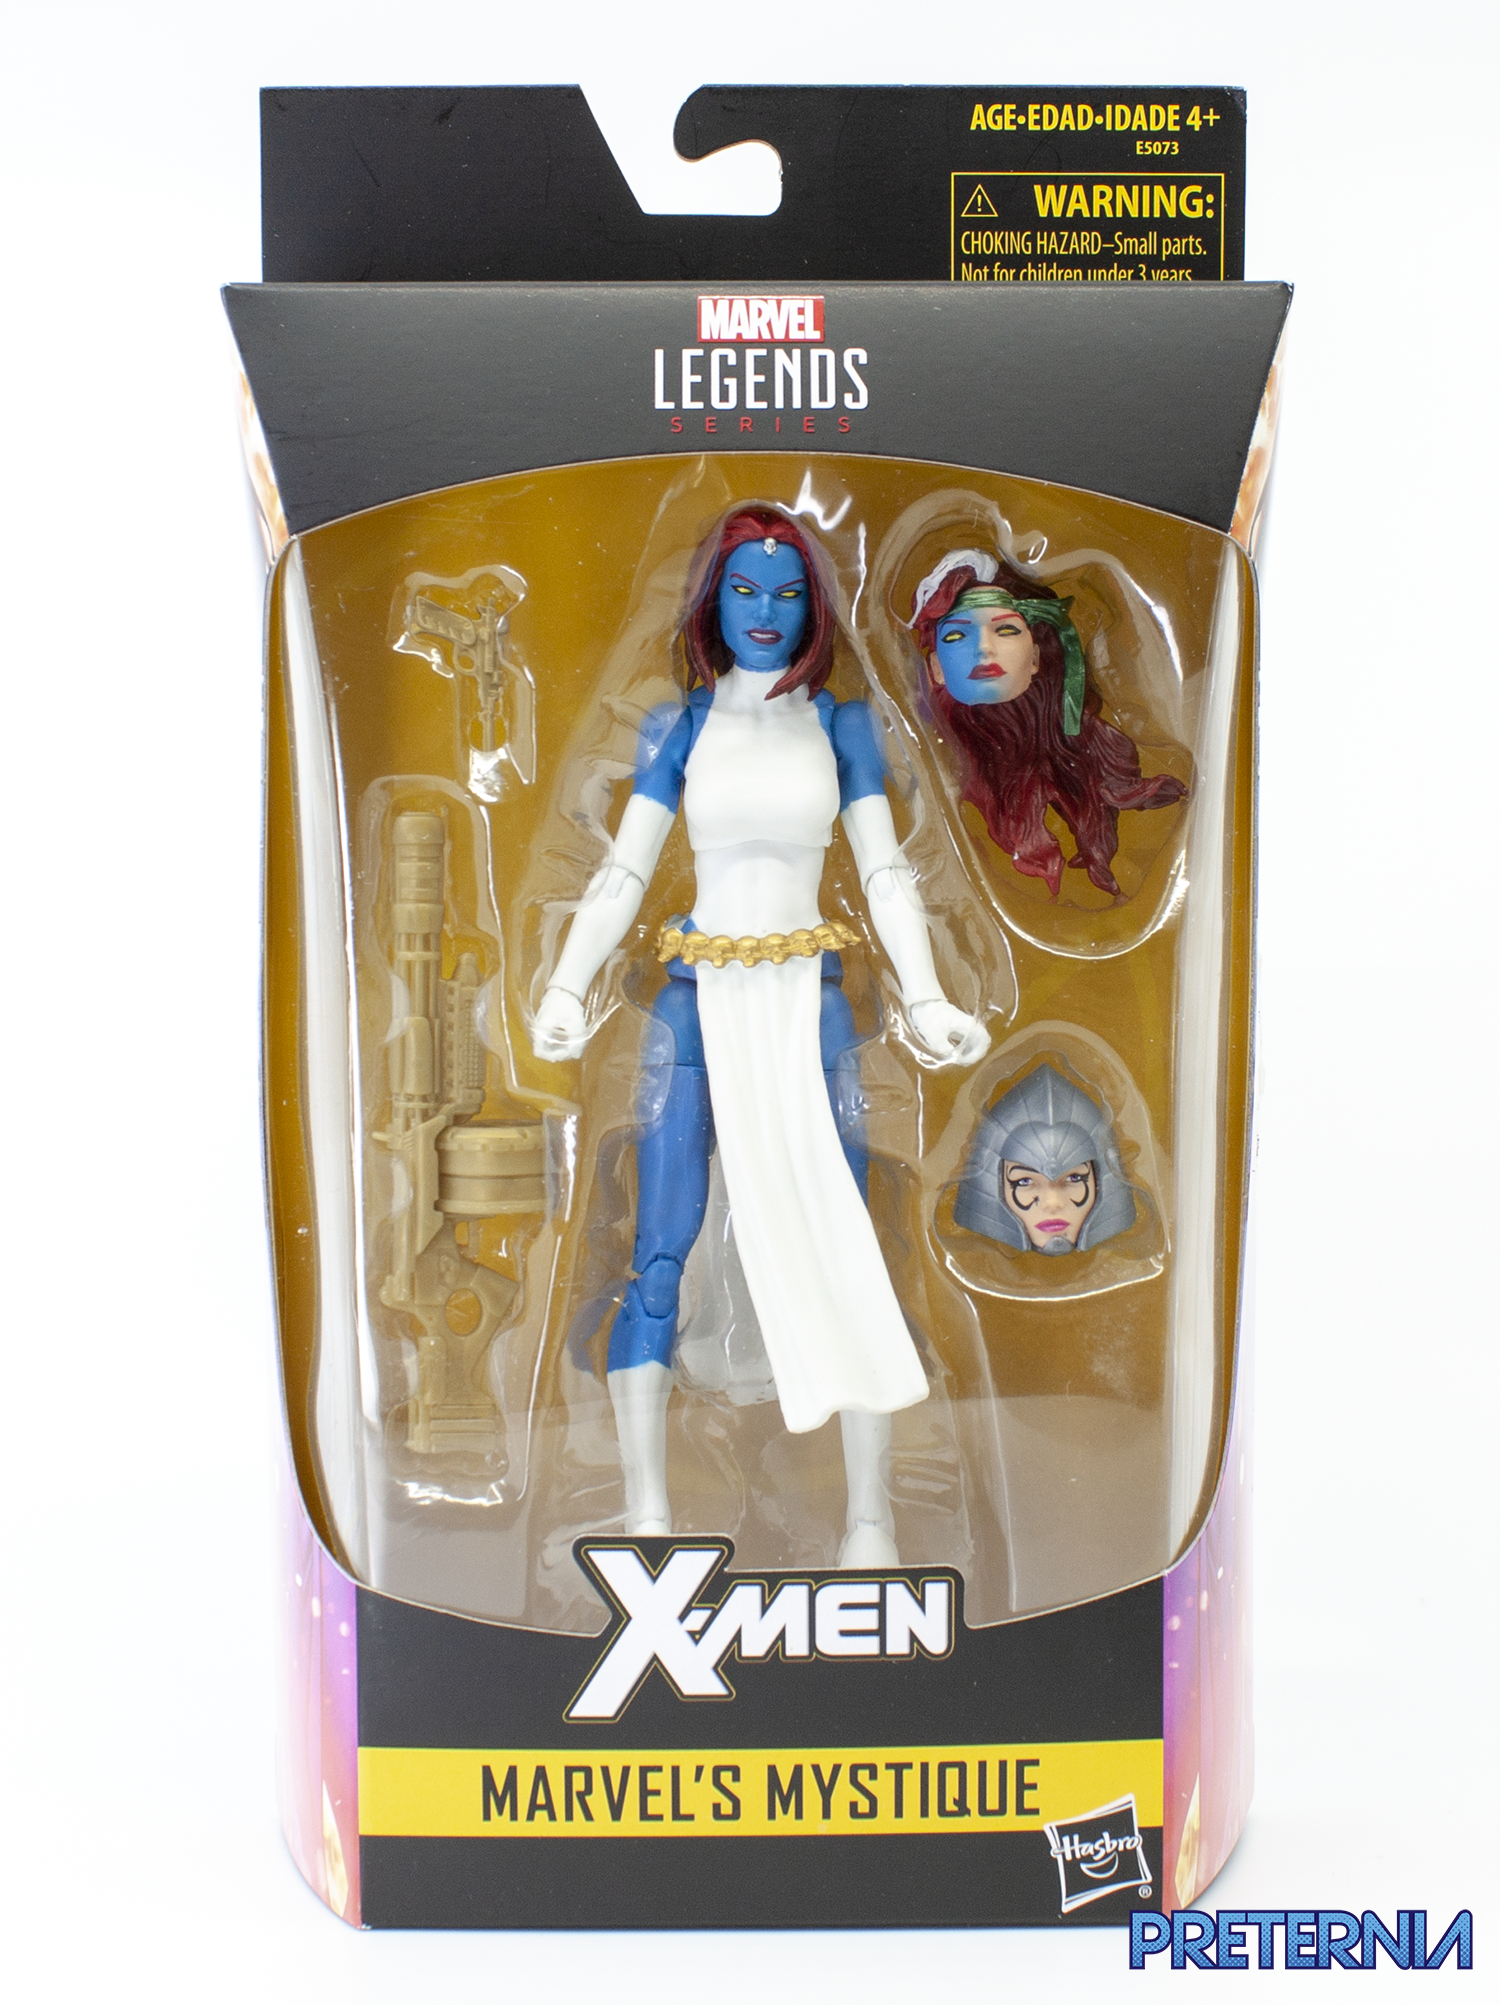 Marvel Legends 6" Inch Walgreens Exclusive X-Men Mystique Loose Complete